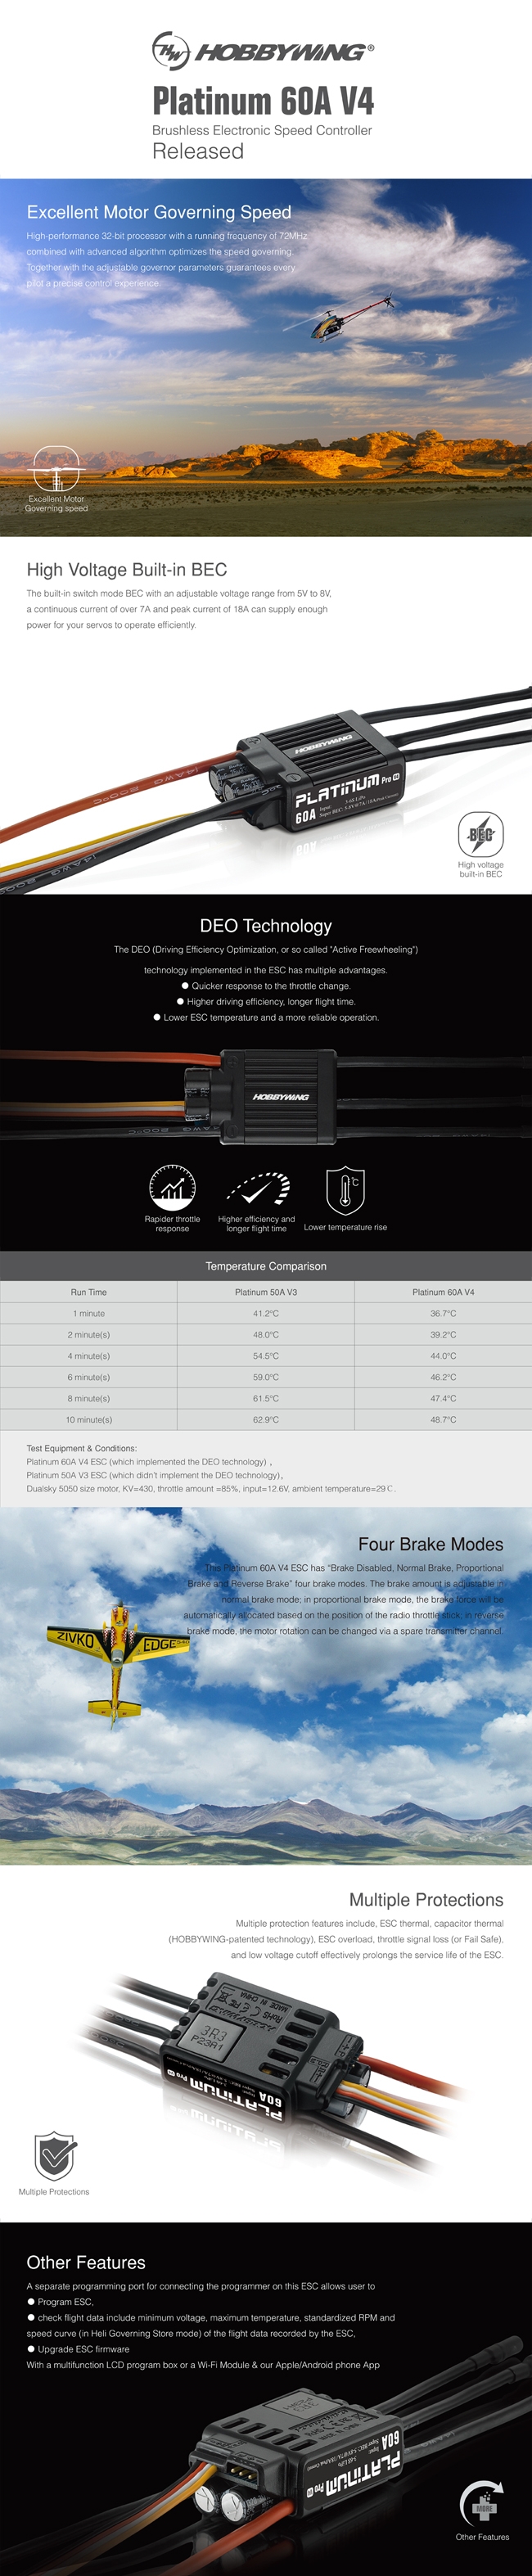 Hobbywing Platinum 60A V4 Brushless ESC For RC Model